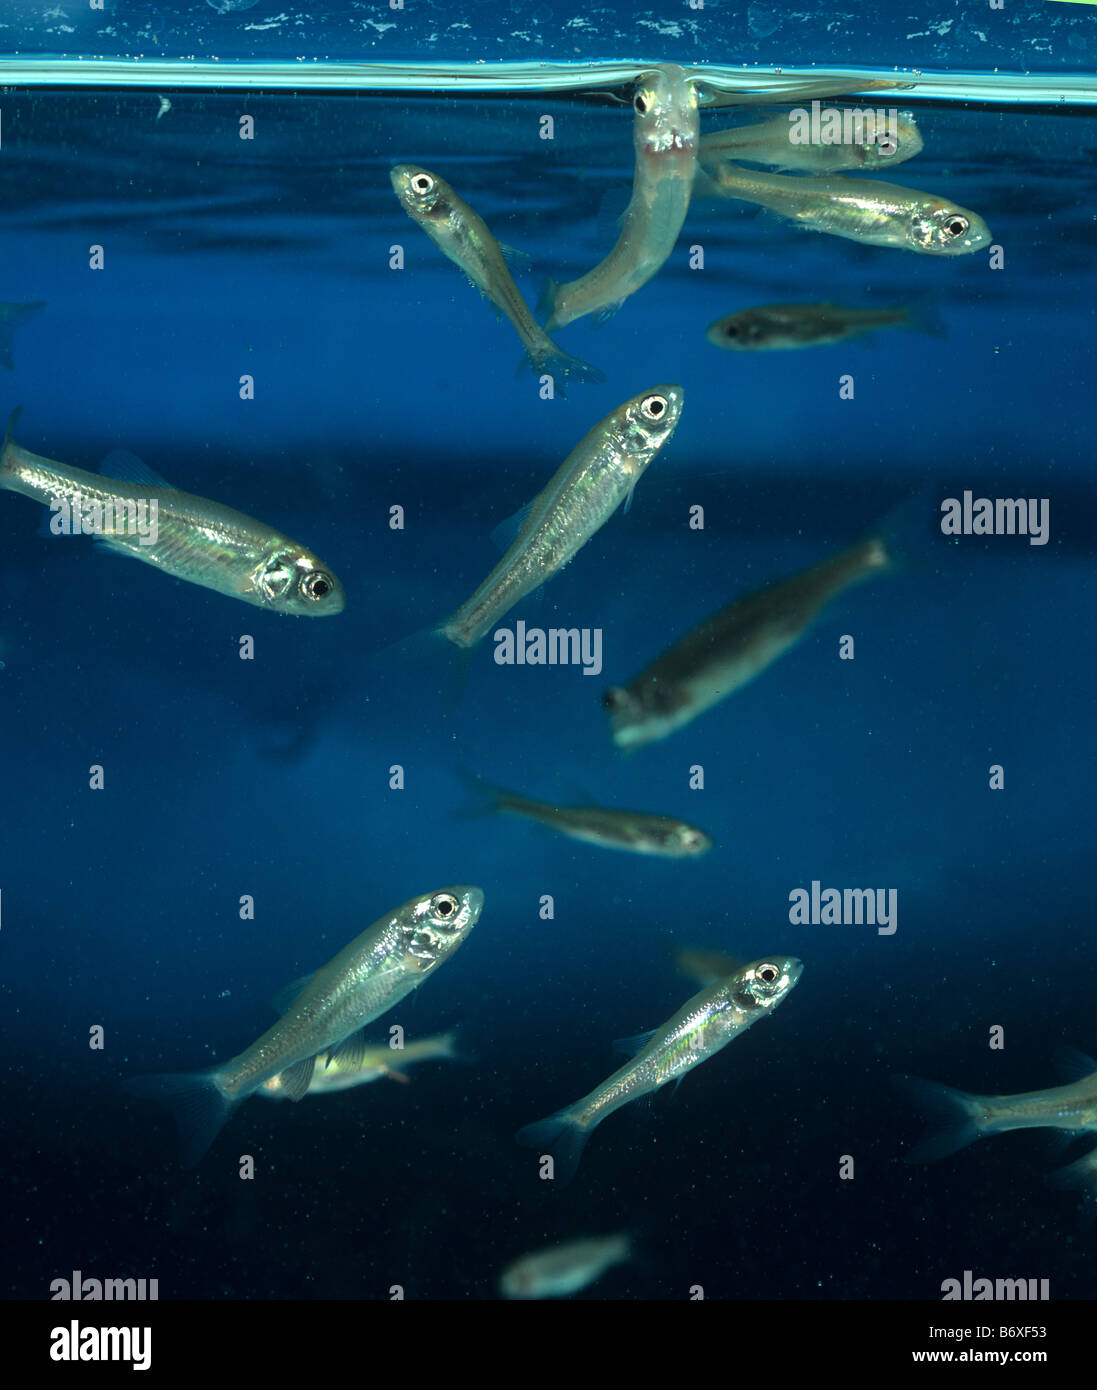 Tête-de-boule Pimephales promelas poissons utilisés dans les études écologiques Banque D'Images